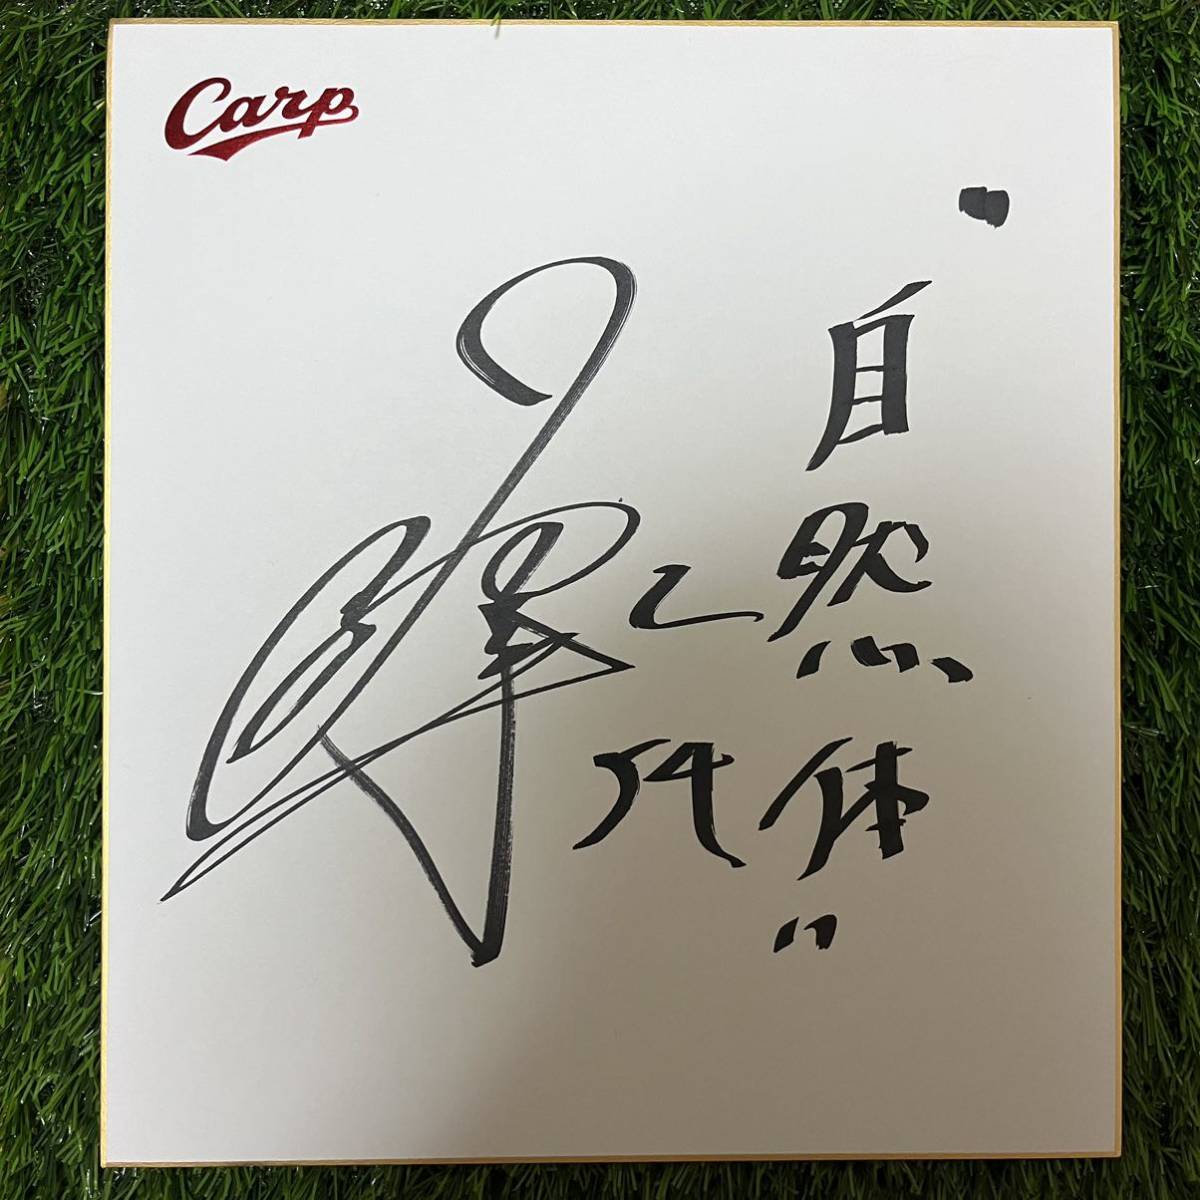 Хиросима Тойо Карп Юя Нирасава № 54 цветная бумага с автографом, бейсбол, Сувенир, Сопутствующие товары, знак